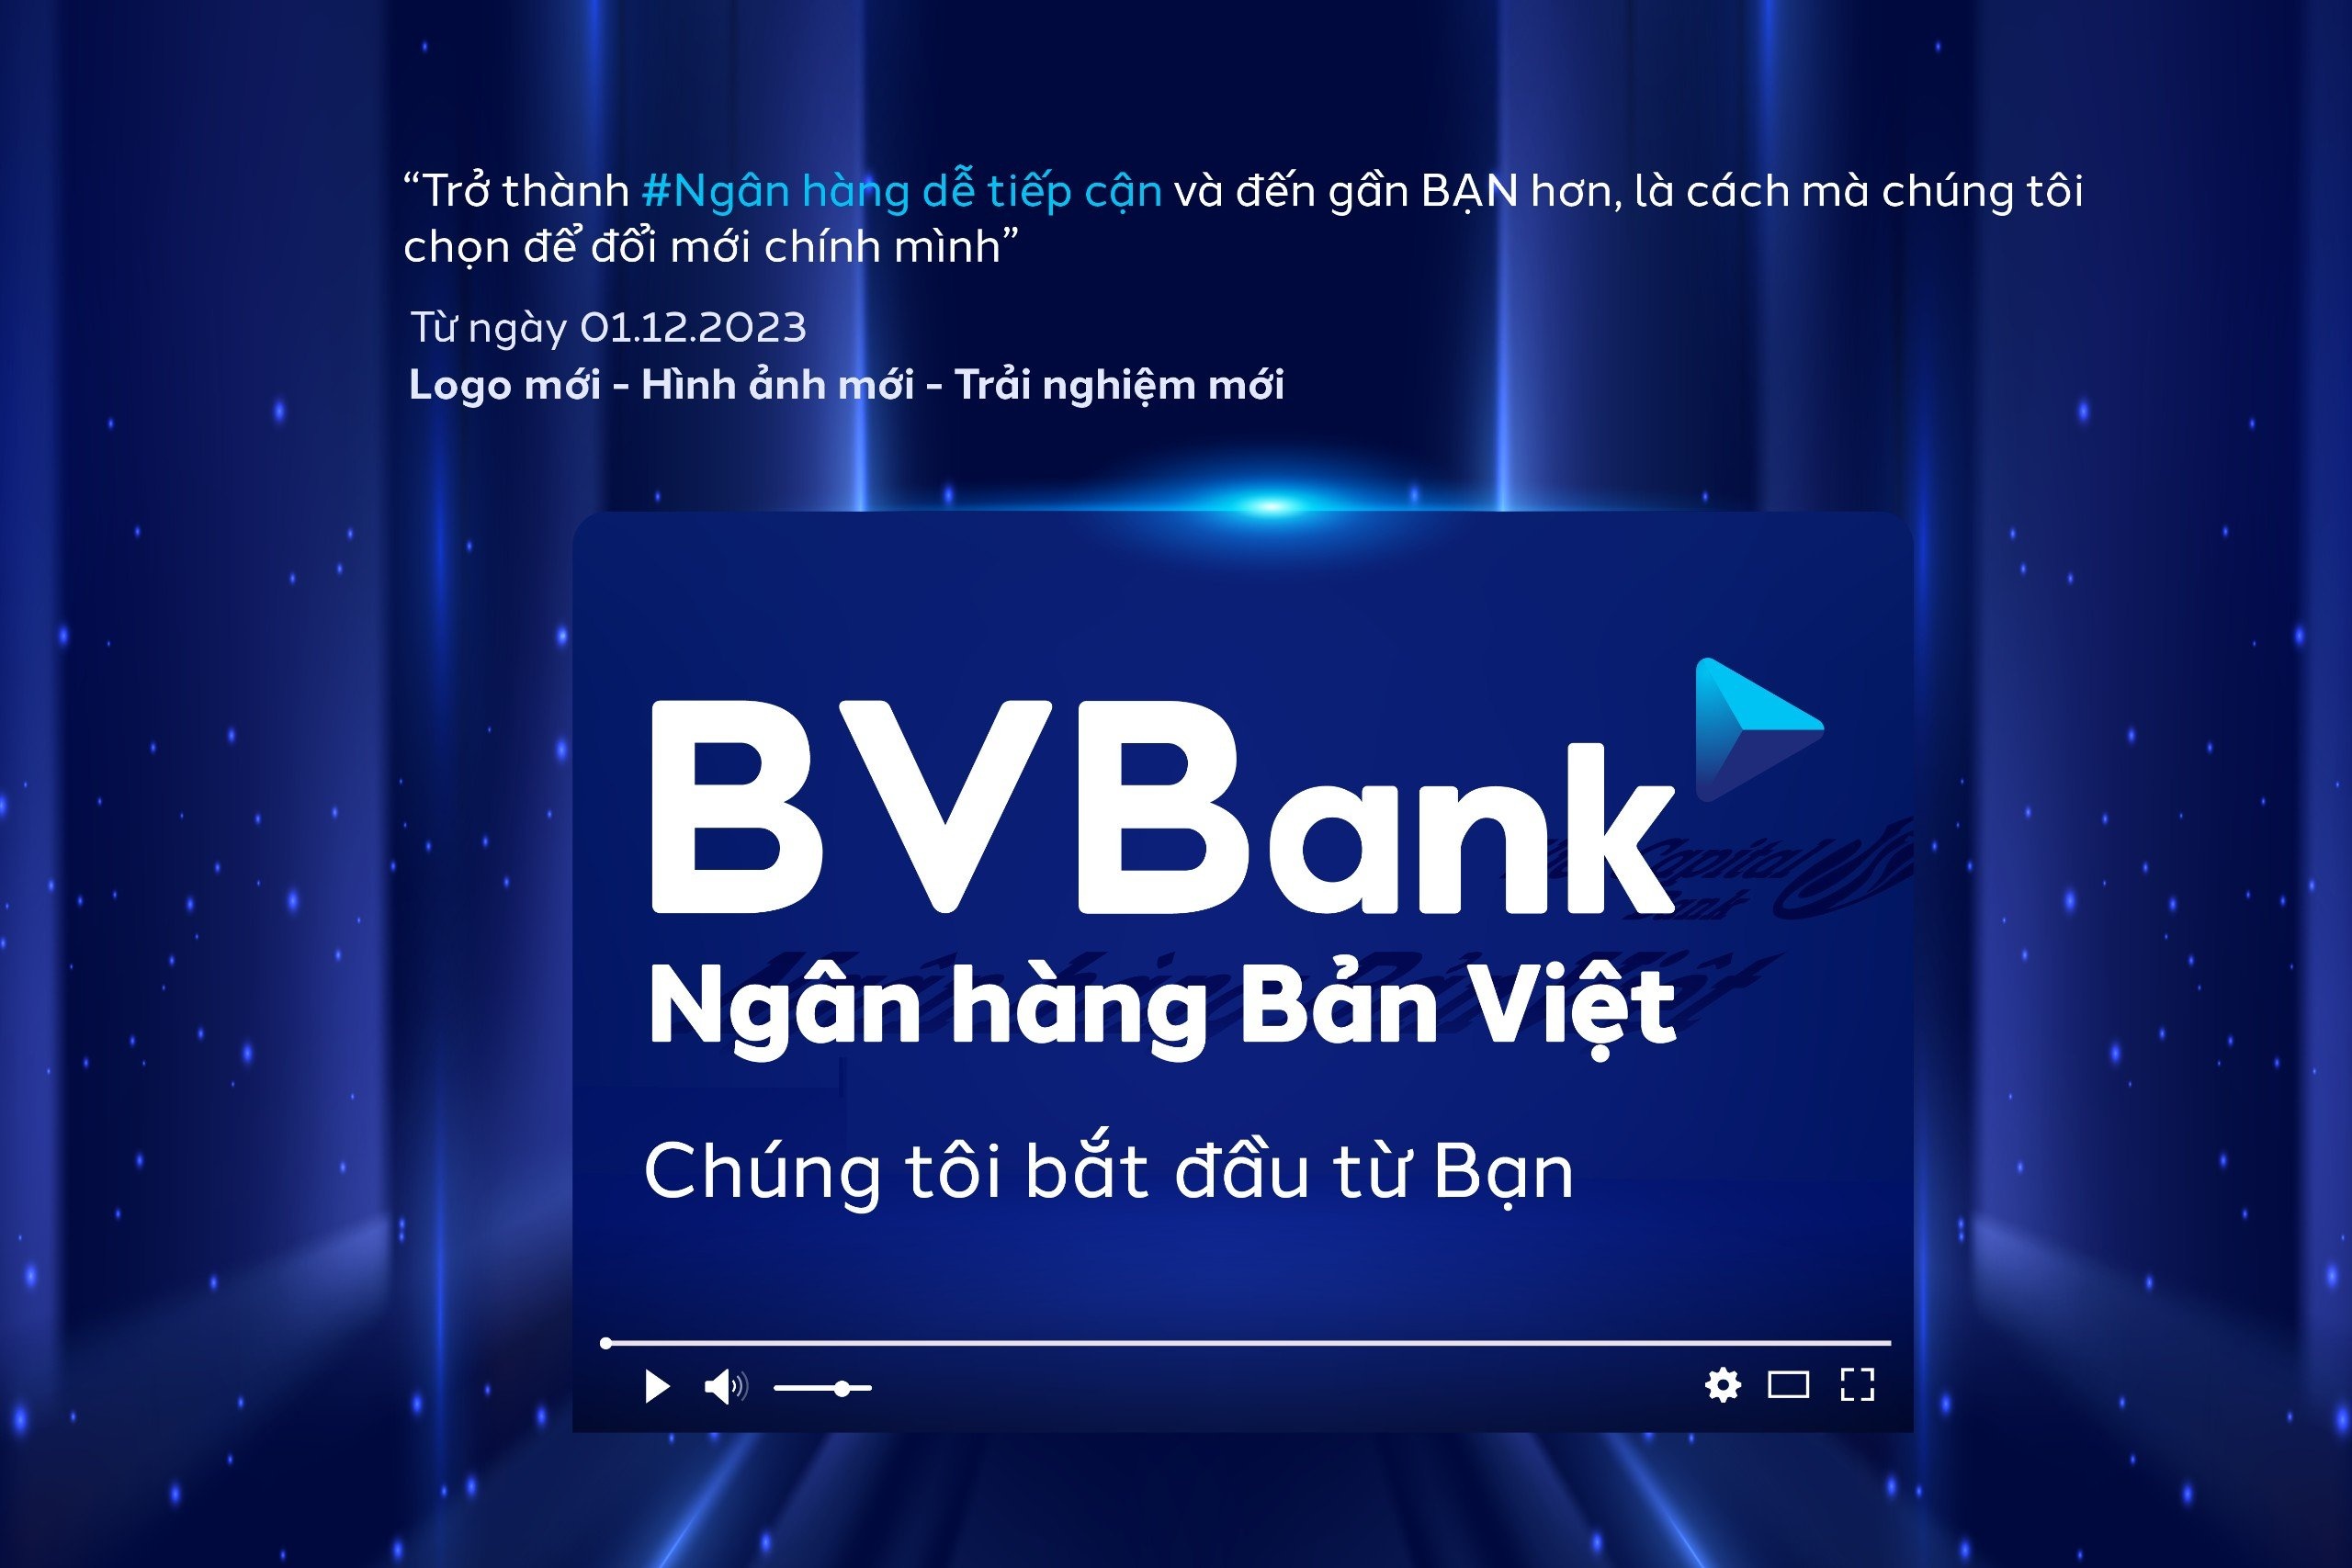 Ngân hàng Bản Việt ra mắt bộ nhận diện thương hiệu mới